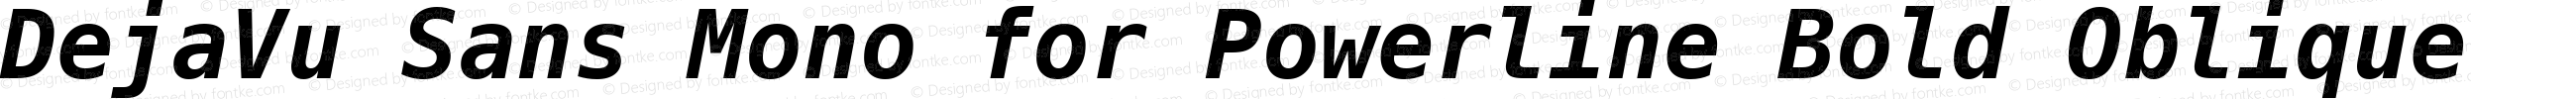 DejaVu Sans Mono Bold Oblique for Powerline Plus Nerd File Types Plus Font Awesome Plus Octicons Plus Pomicons Windows Compatible